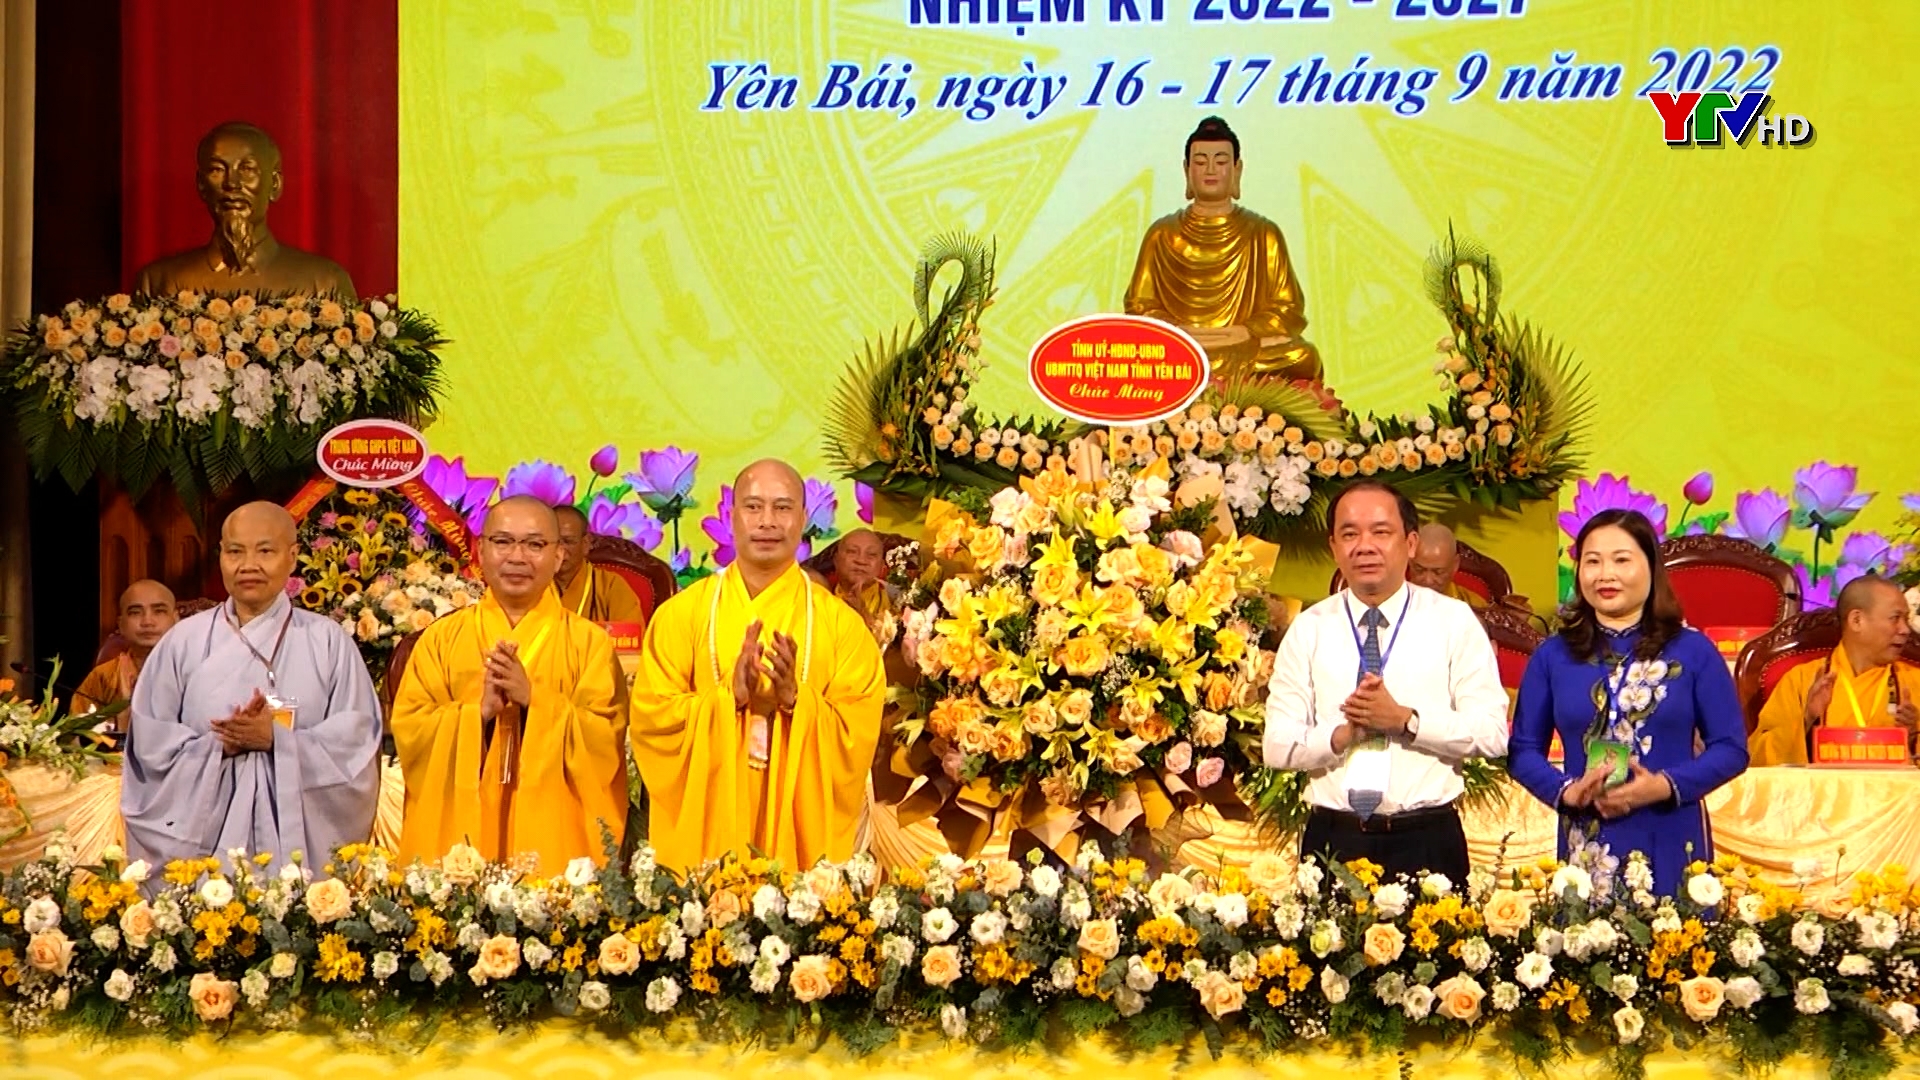 Đại hội Giáo hội Phật giáo Việt Nam tỉnh Yên Bái lần thứ III, nhiệm kỳ 2022-2027